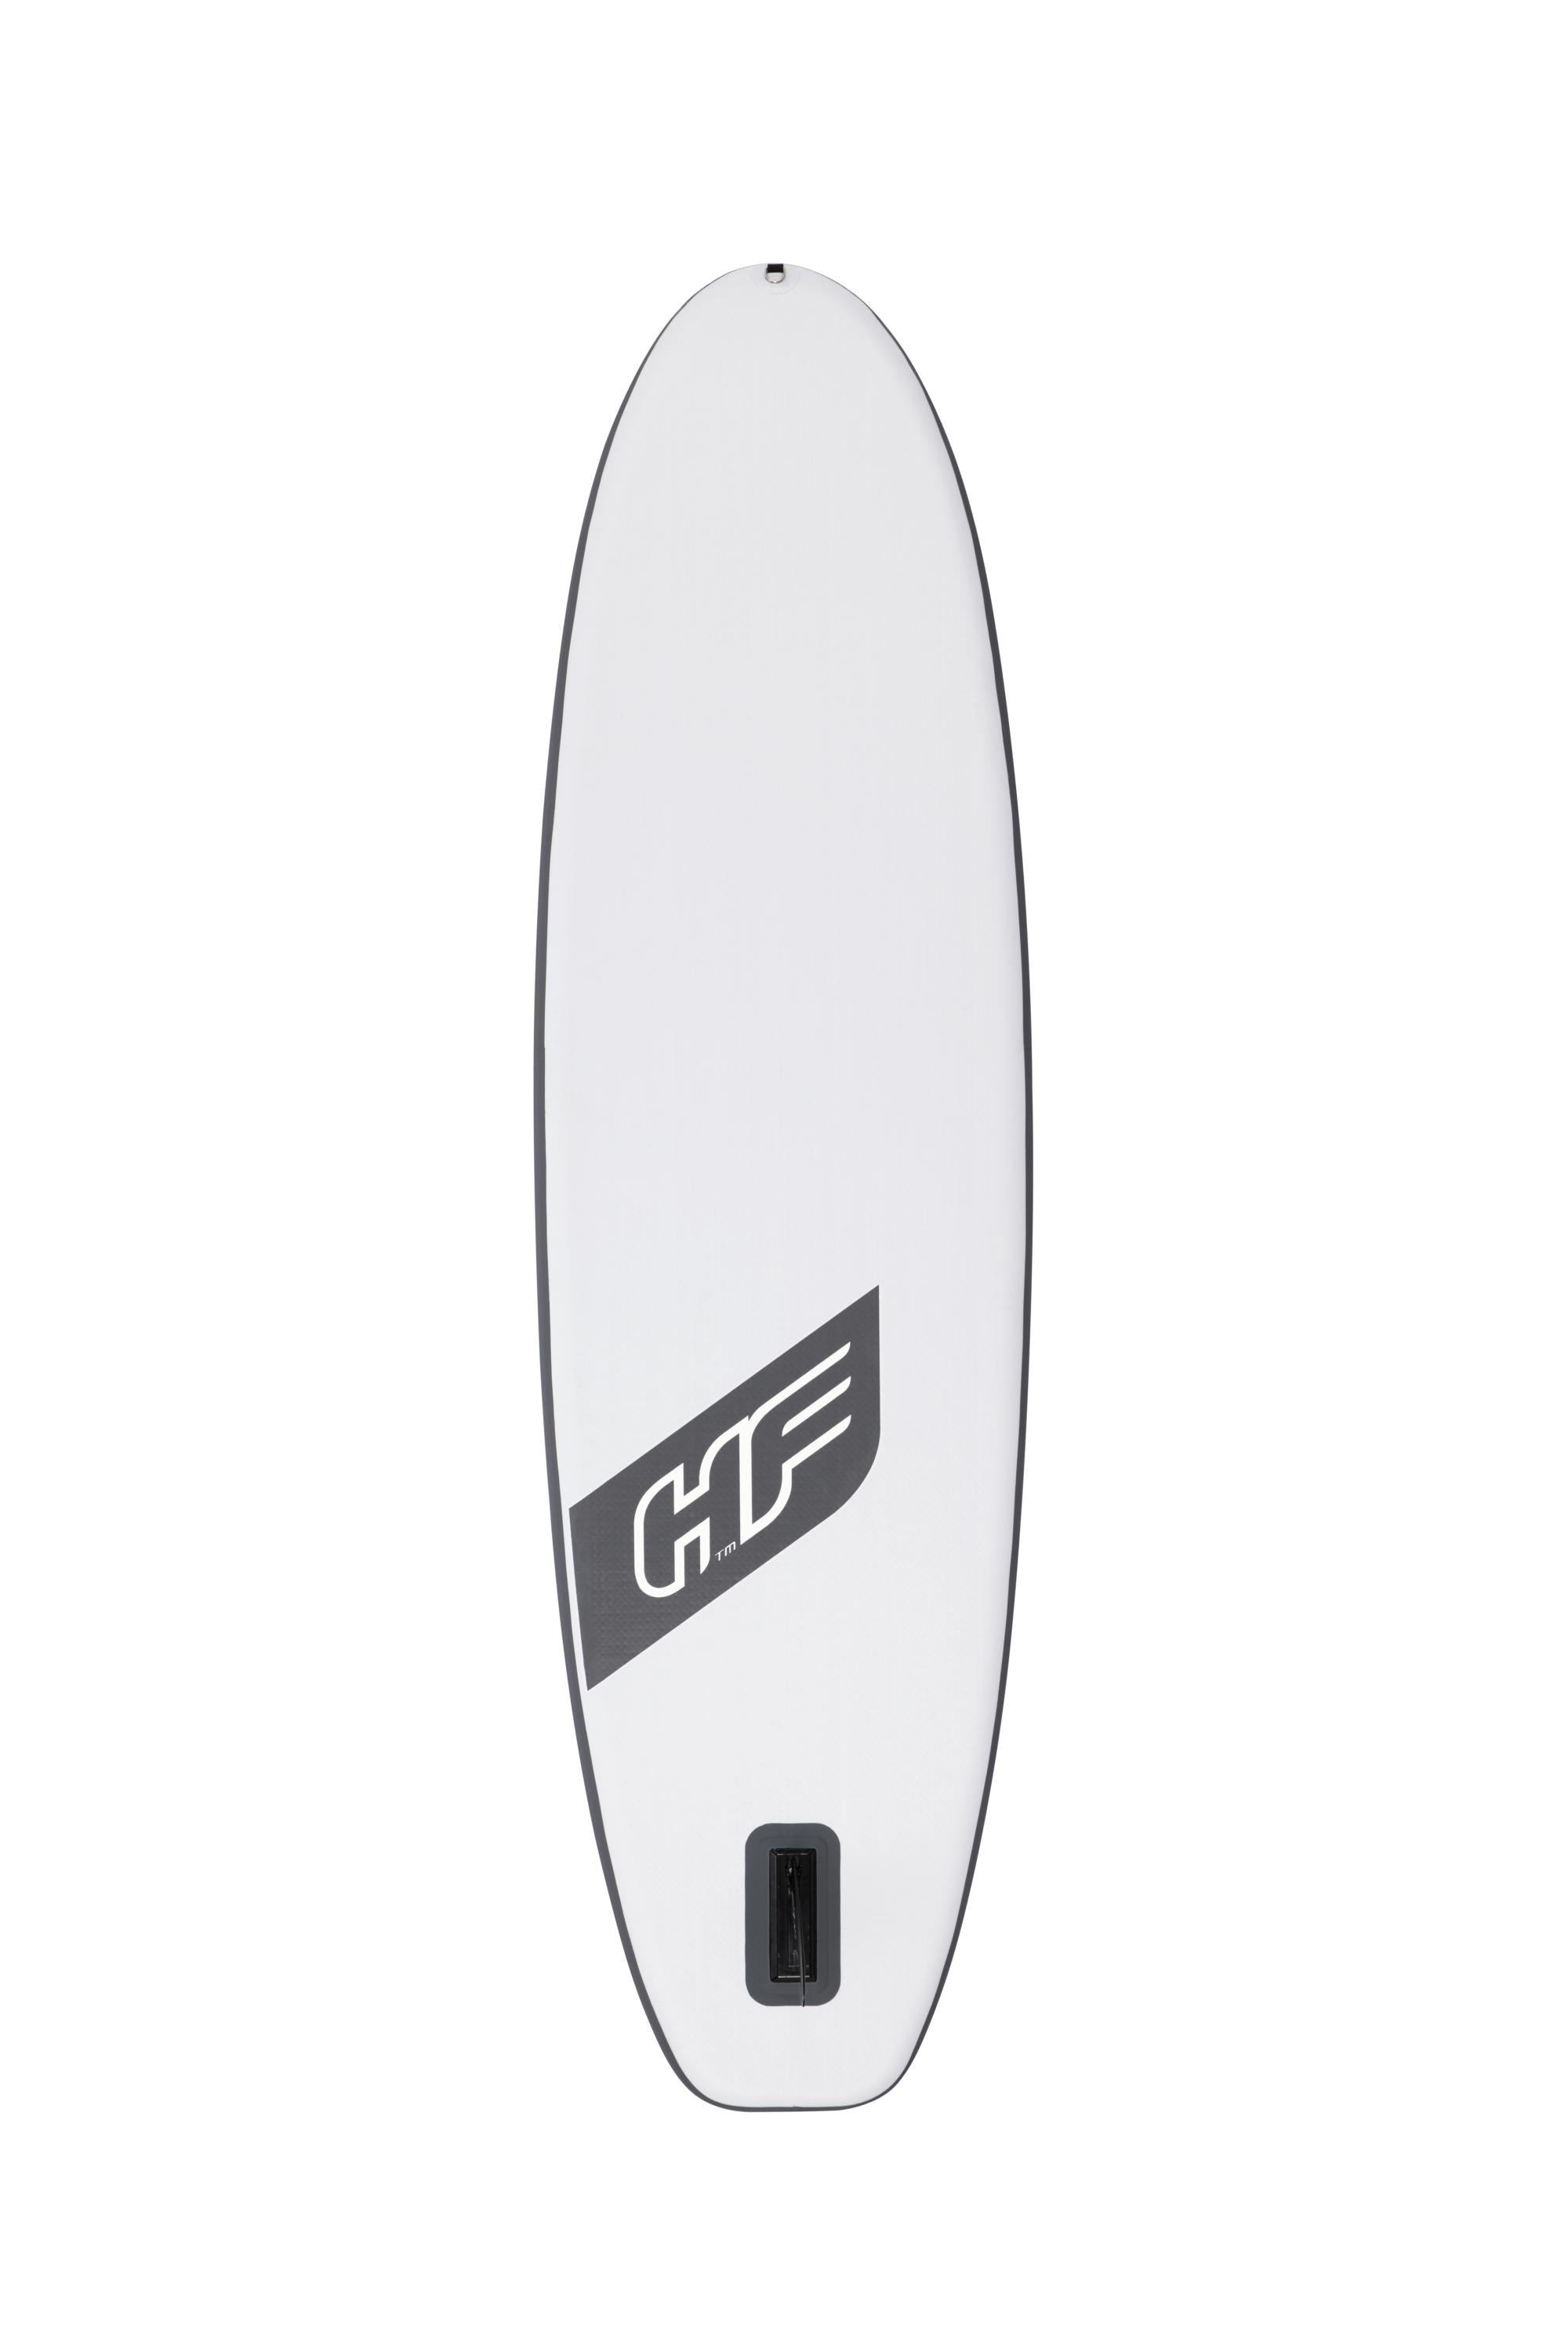 بيست واي Hydro-Force SurfBoard بغطاء أبيض لوح مجداف قائم (SUP)